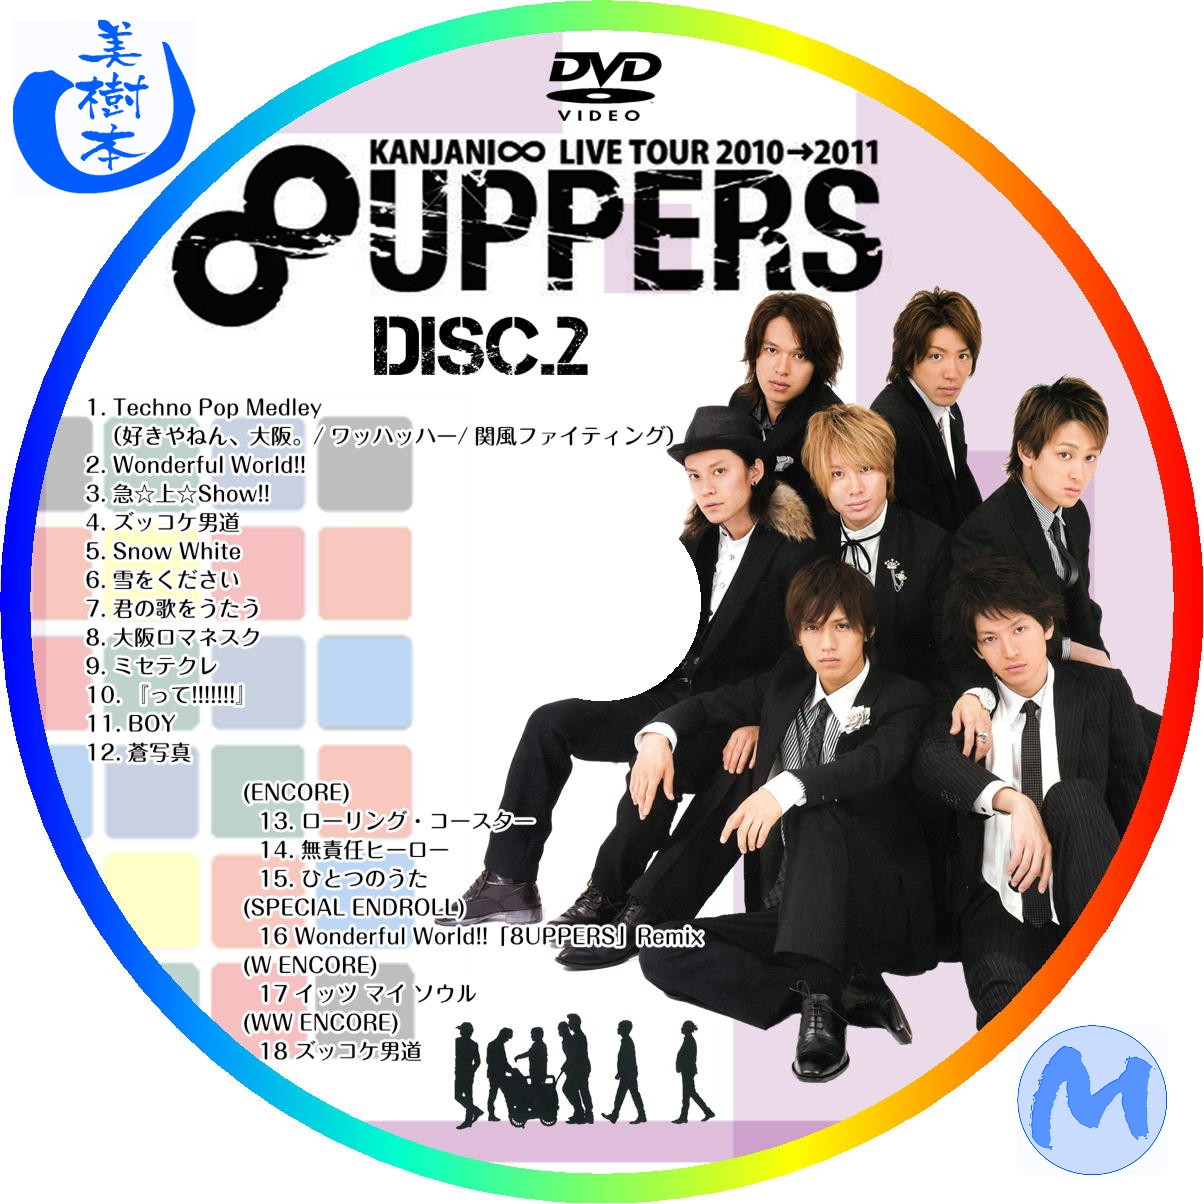 関ジャニ∞/KANJANI∞ LIVE TOUR 2010→2011 8UPP…DVD - ミュージック